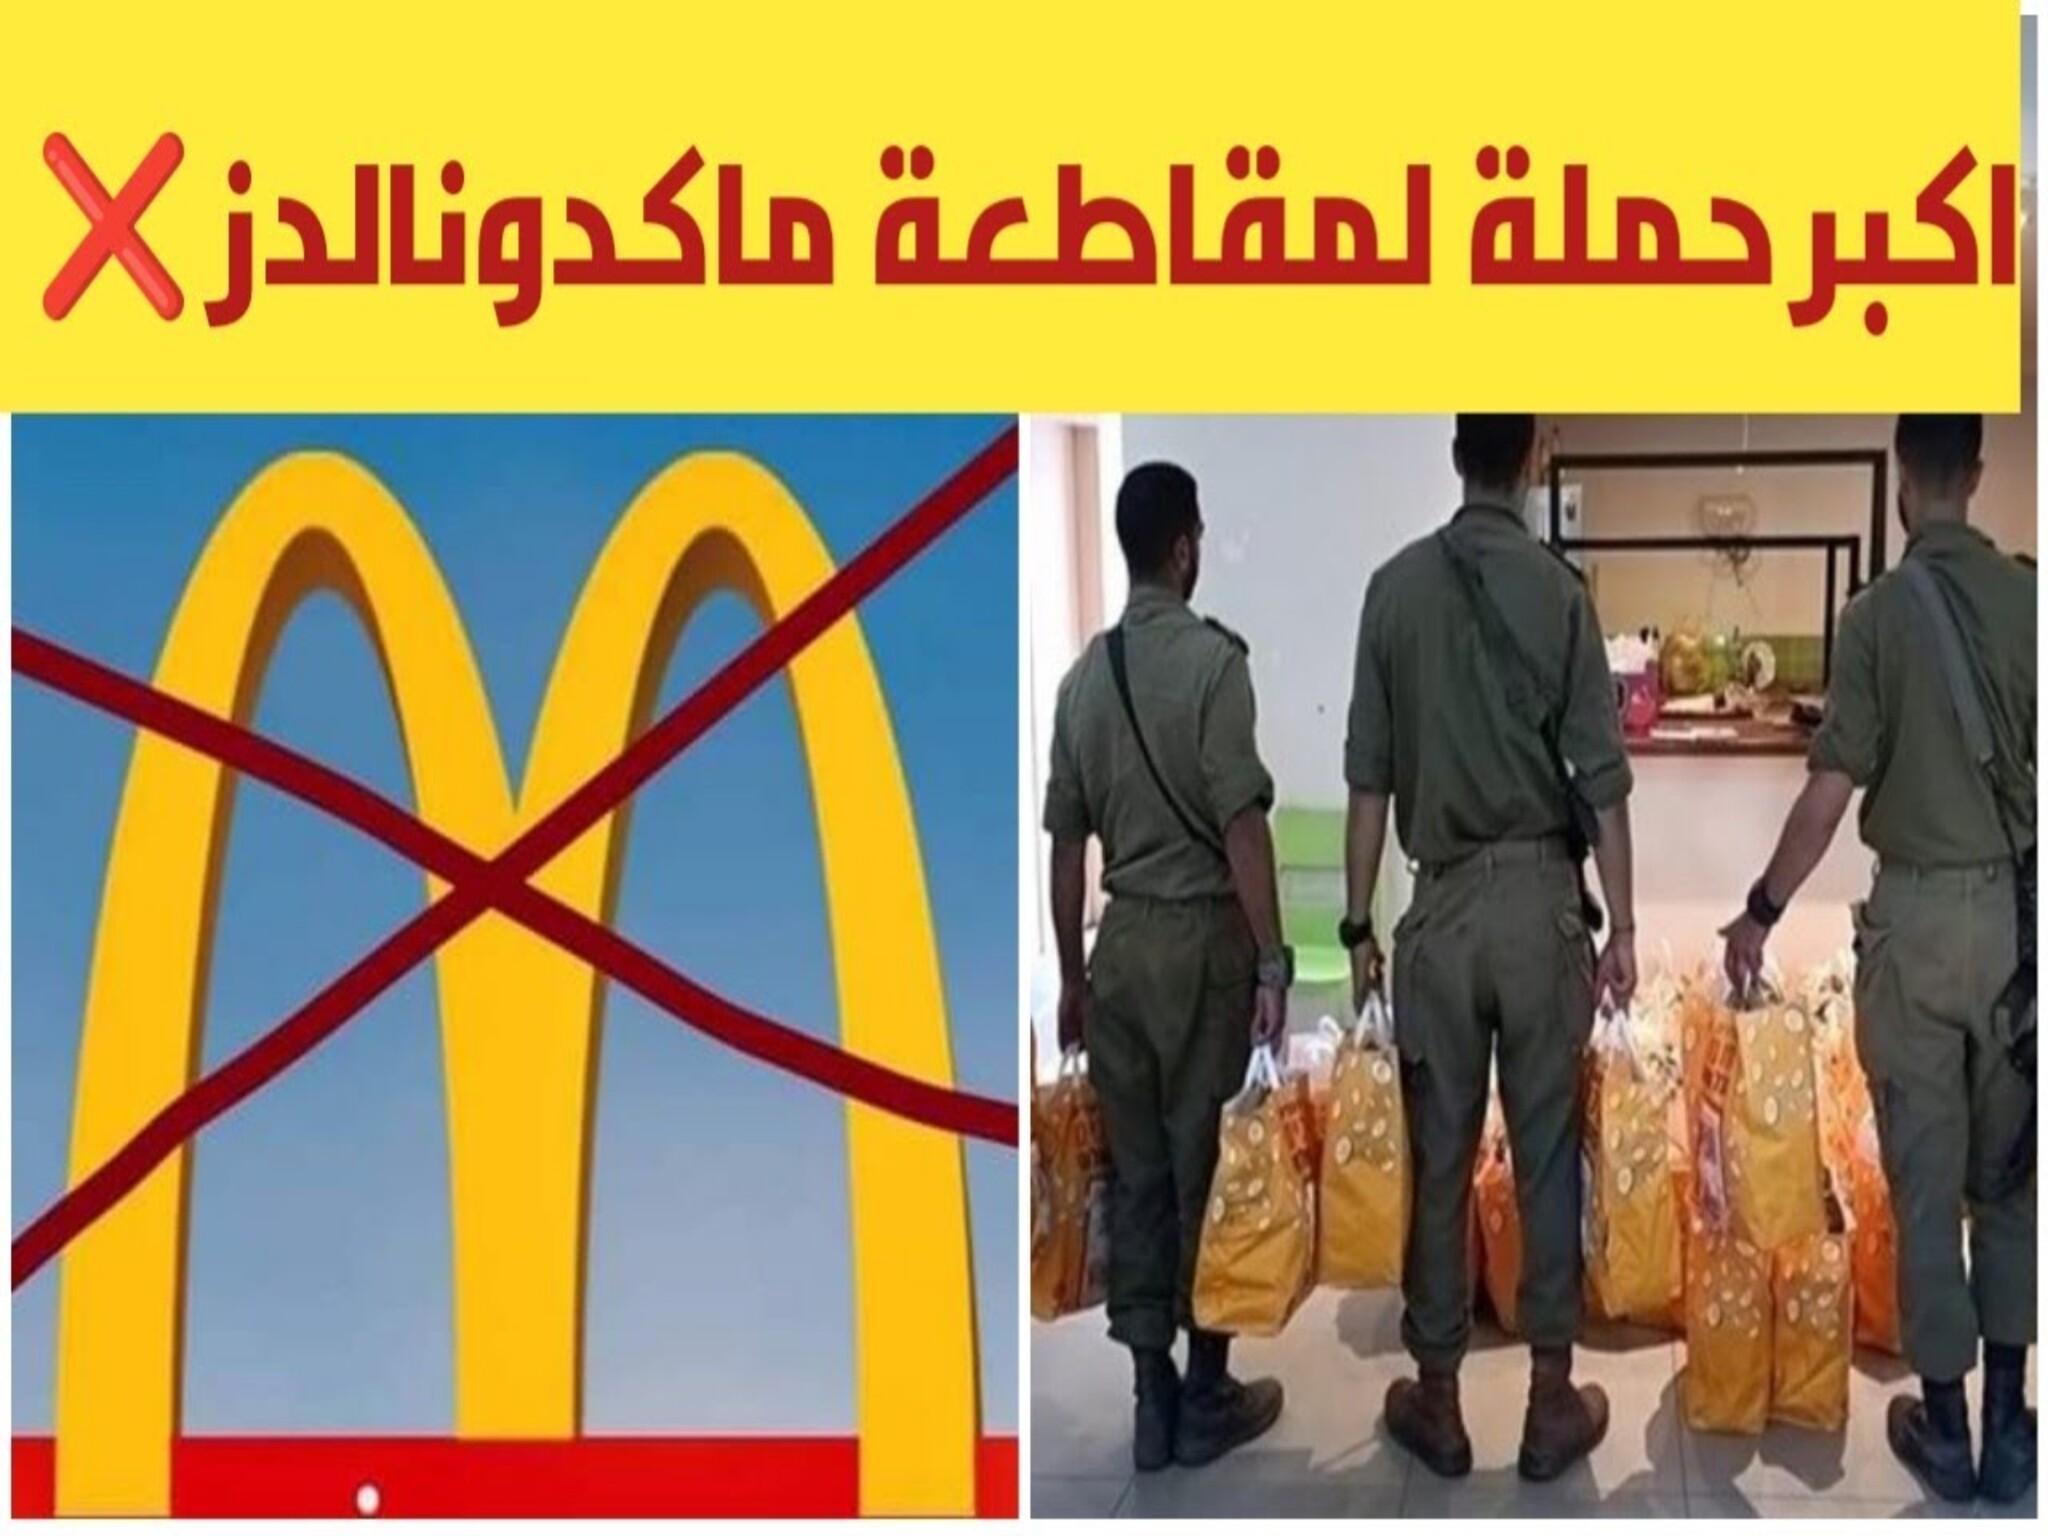  حملة لمقاطعة "ماكدونالدز"...بعد تقديمها وجبات مجانية للجيش الإسرائيلي